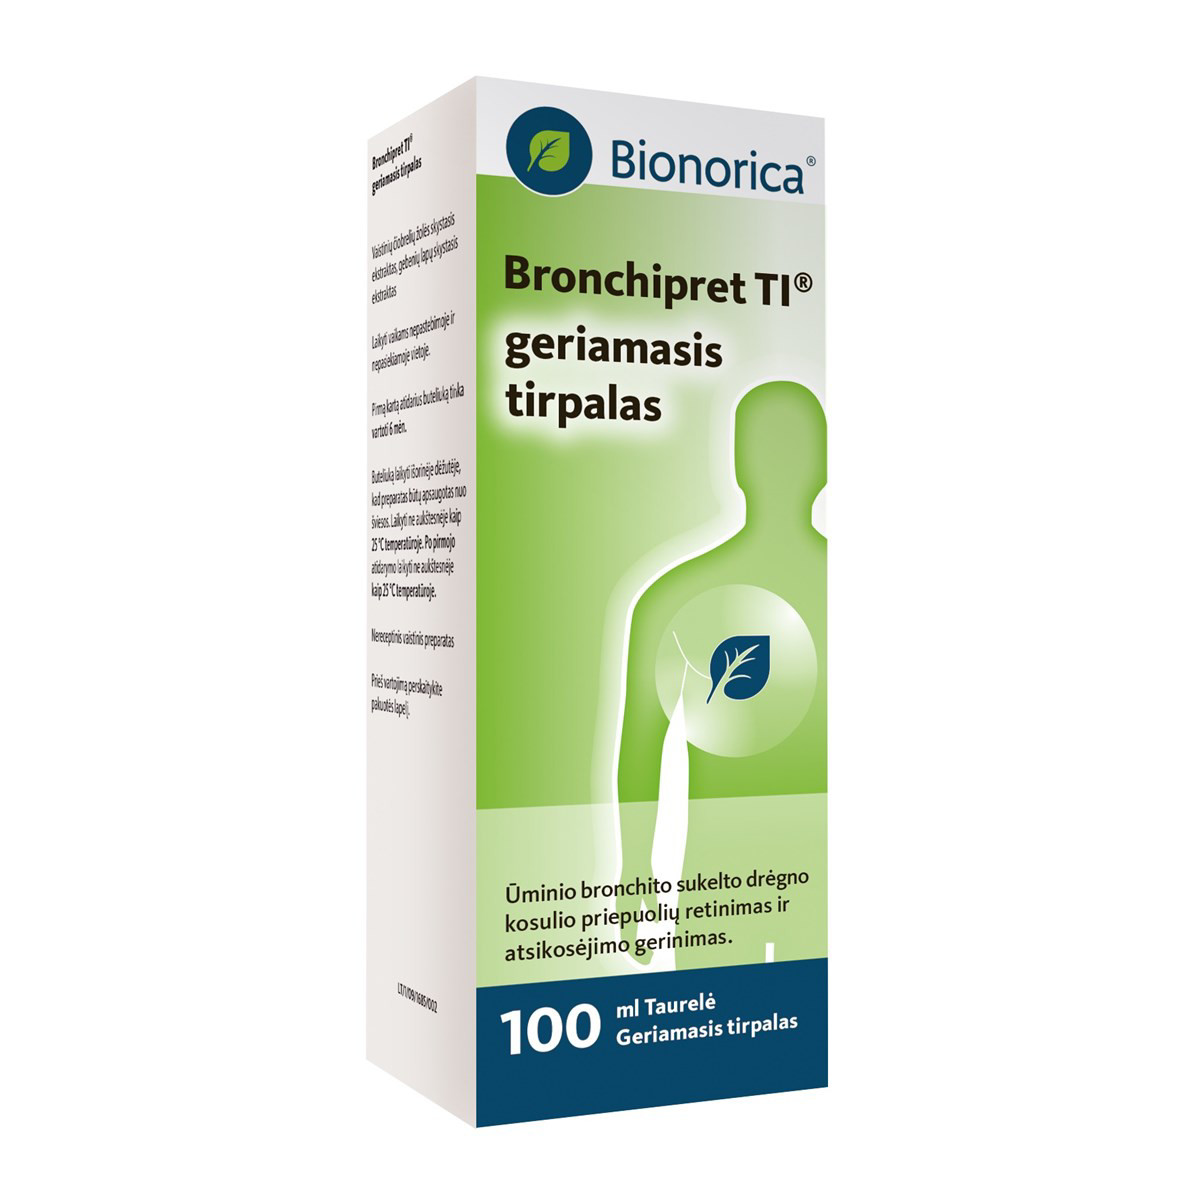 BRONCHIPRET TI, 150 mg/15 mg/g, geriamasis tirpalas, 100 ml ir dozavimo taurelė, N1